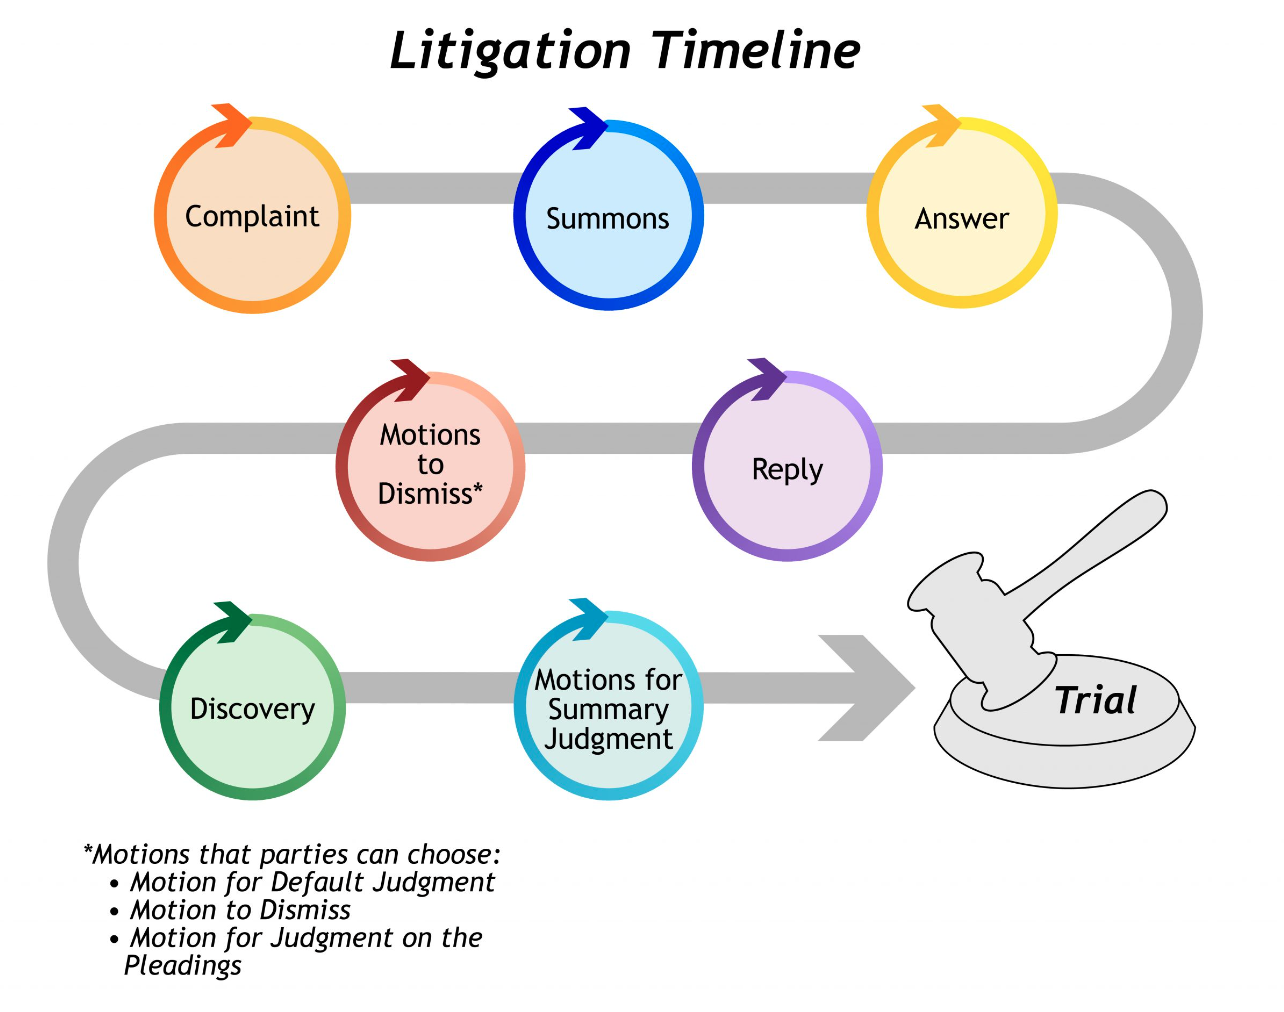 The litigation timeline